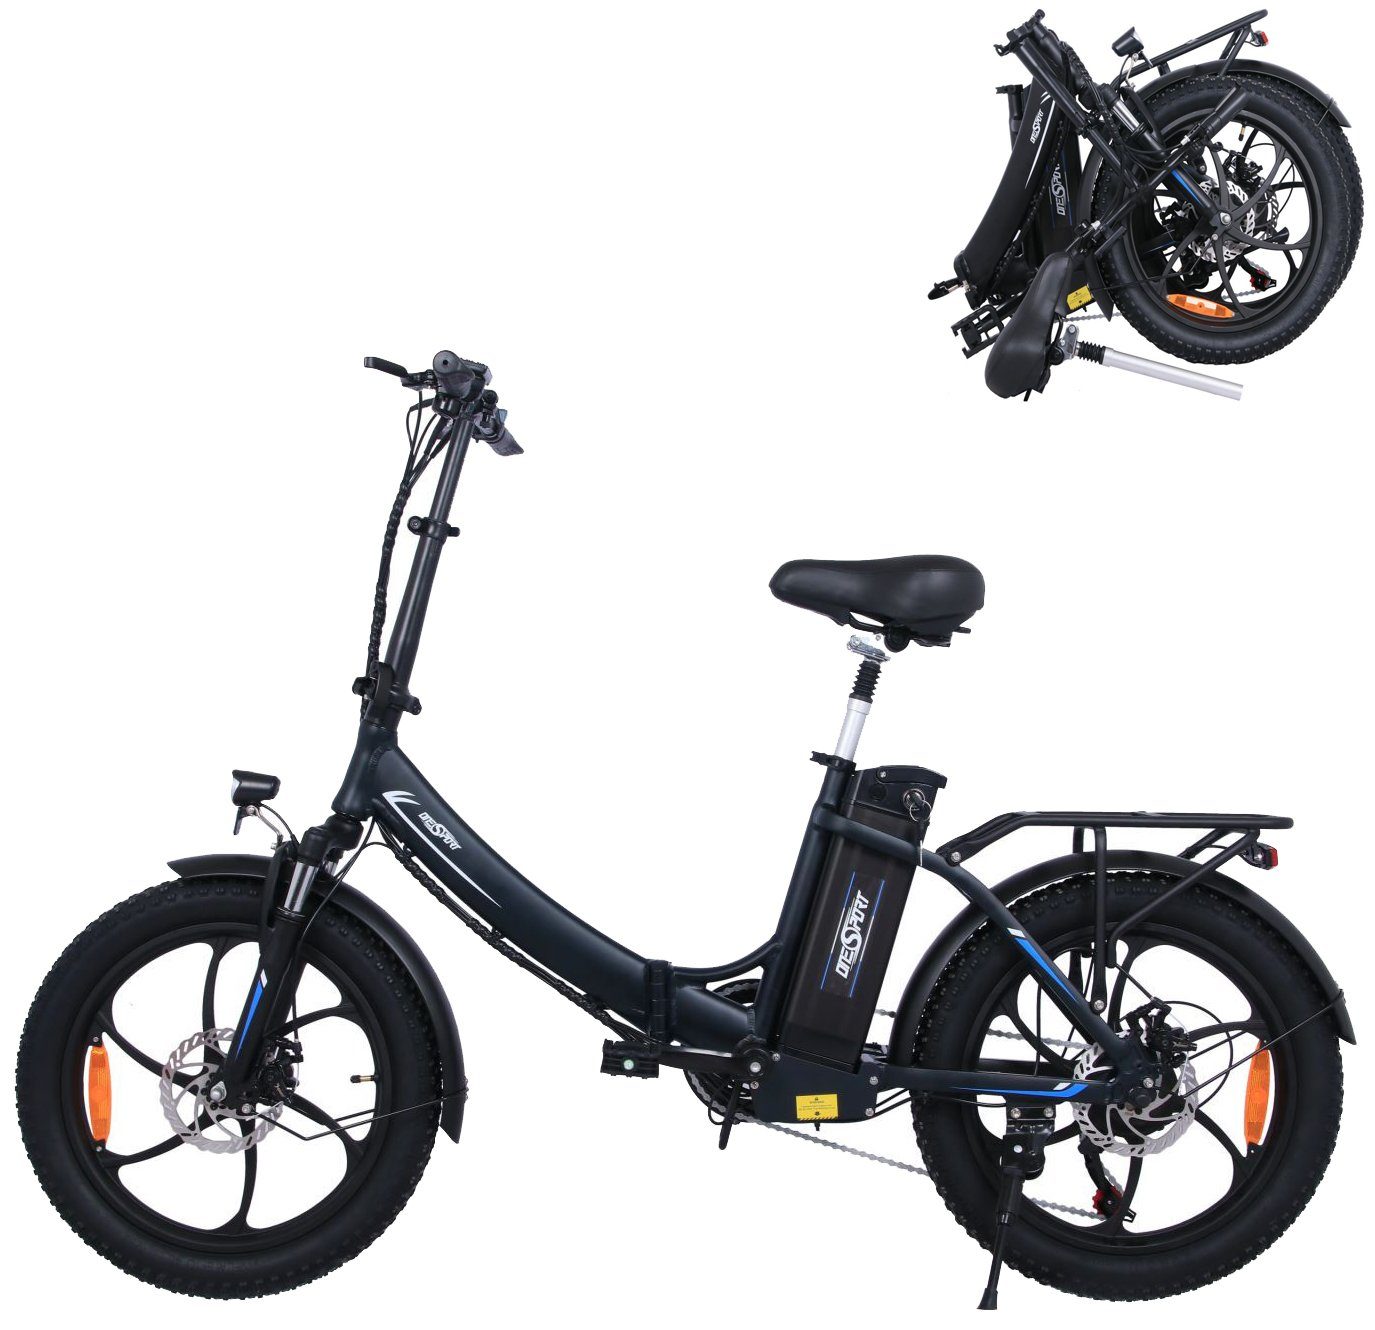 Fangqi E-Bike 20 Zoll Klapprad Elektrofahrrad,E-Bike,Shimano 7-Gang,48V/15Ah akku, Kettenschaltung, Heckmotor, (spar-set,E-Mountainbike, E-Dirtbike, MTB(Optionaler Gashebel: Nach dem Einbau des Gashebels kann ein rein elektrischer Modus erreicht werden, Fahrmodi: Pedal-Modus und Power-Assist-Modus), Stadtfahrräder, Smartbikes, Elektrofahrräder für Herren und Damen), Datendisplay, Lithium-Ionen-Akku, Höhenverstellbare Sattelstütze Schwarz